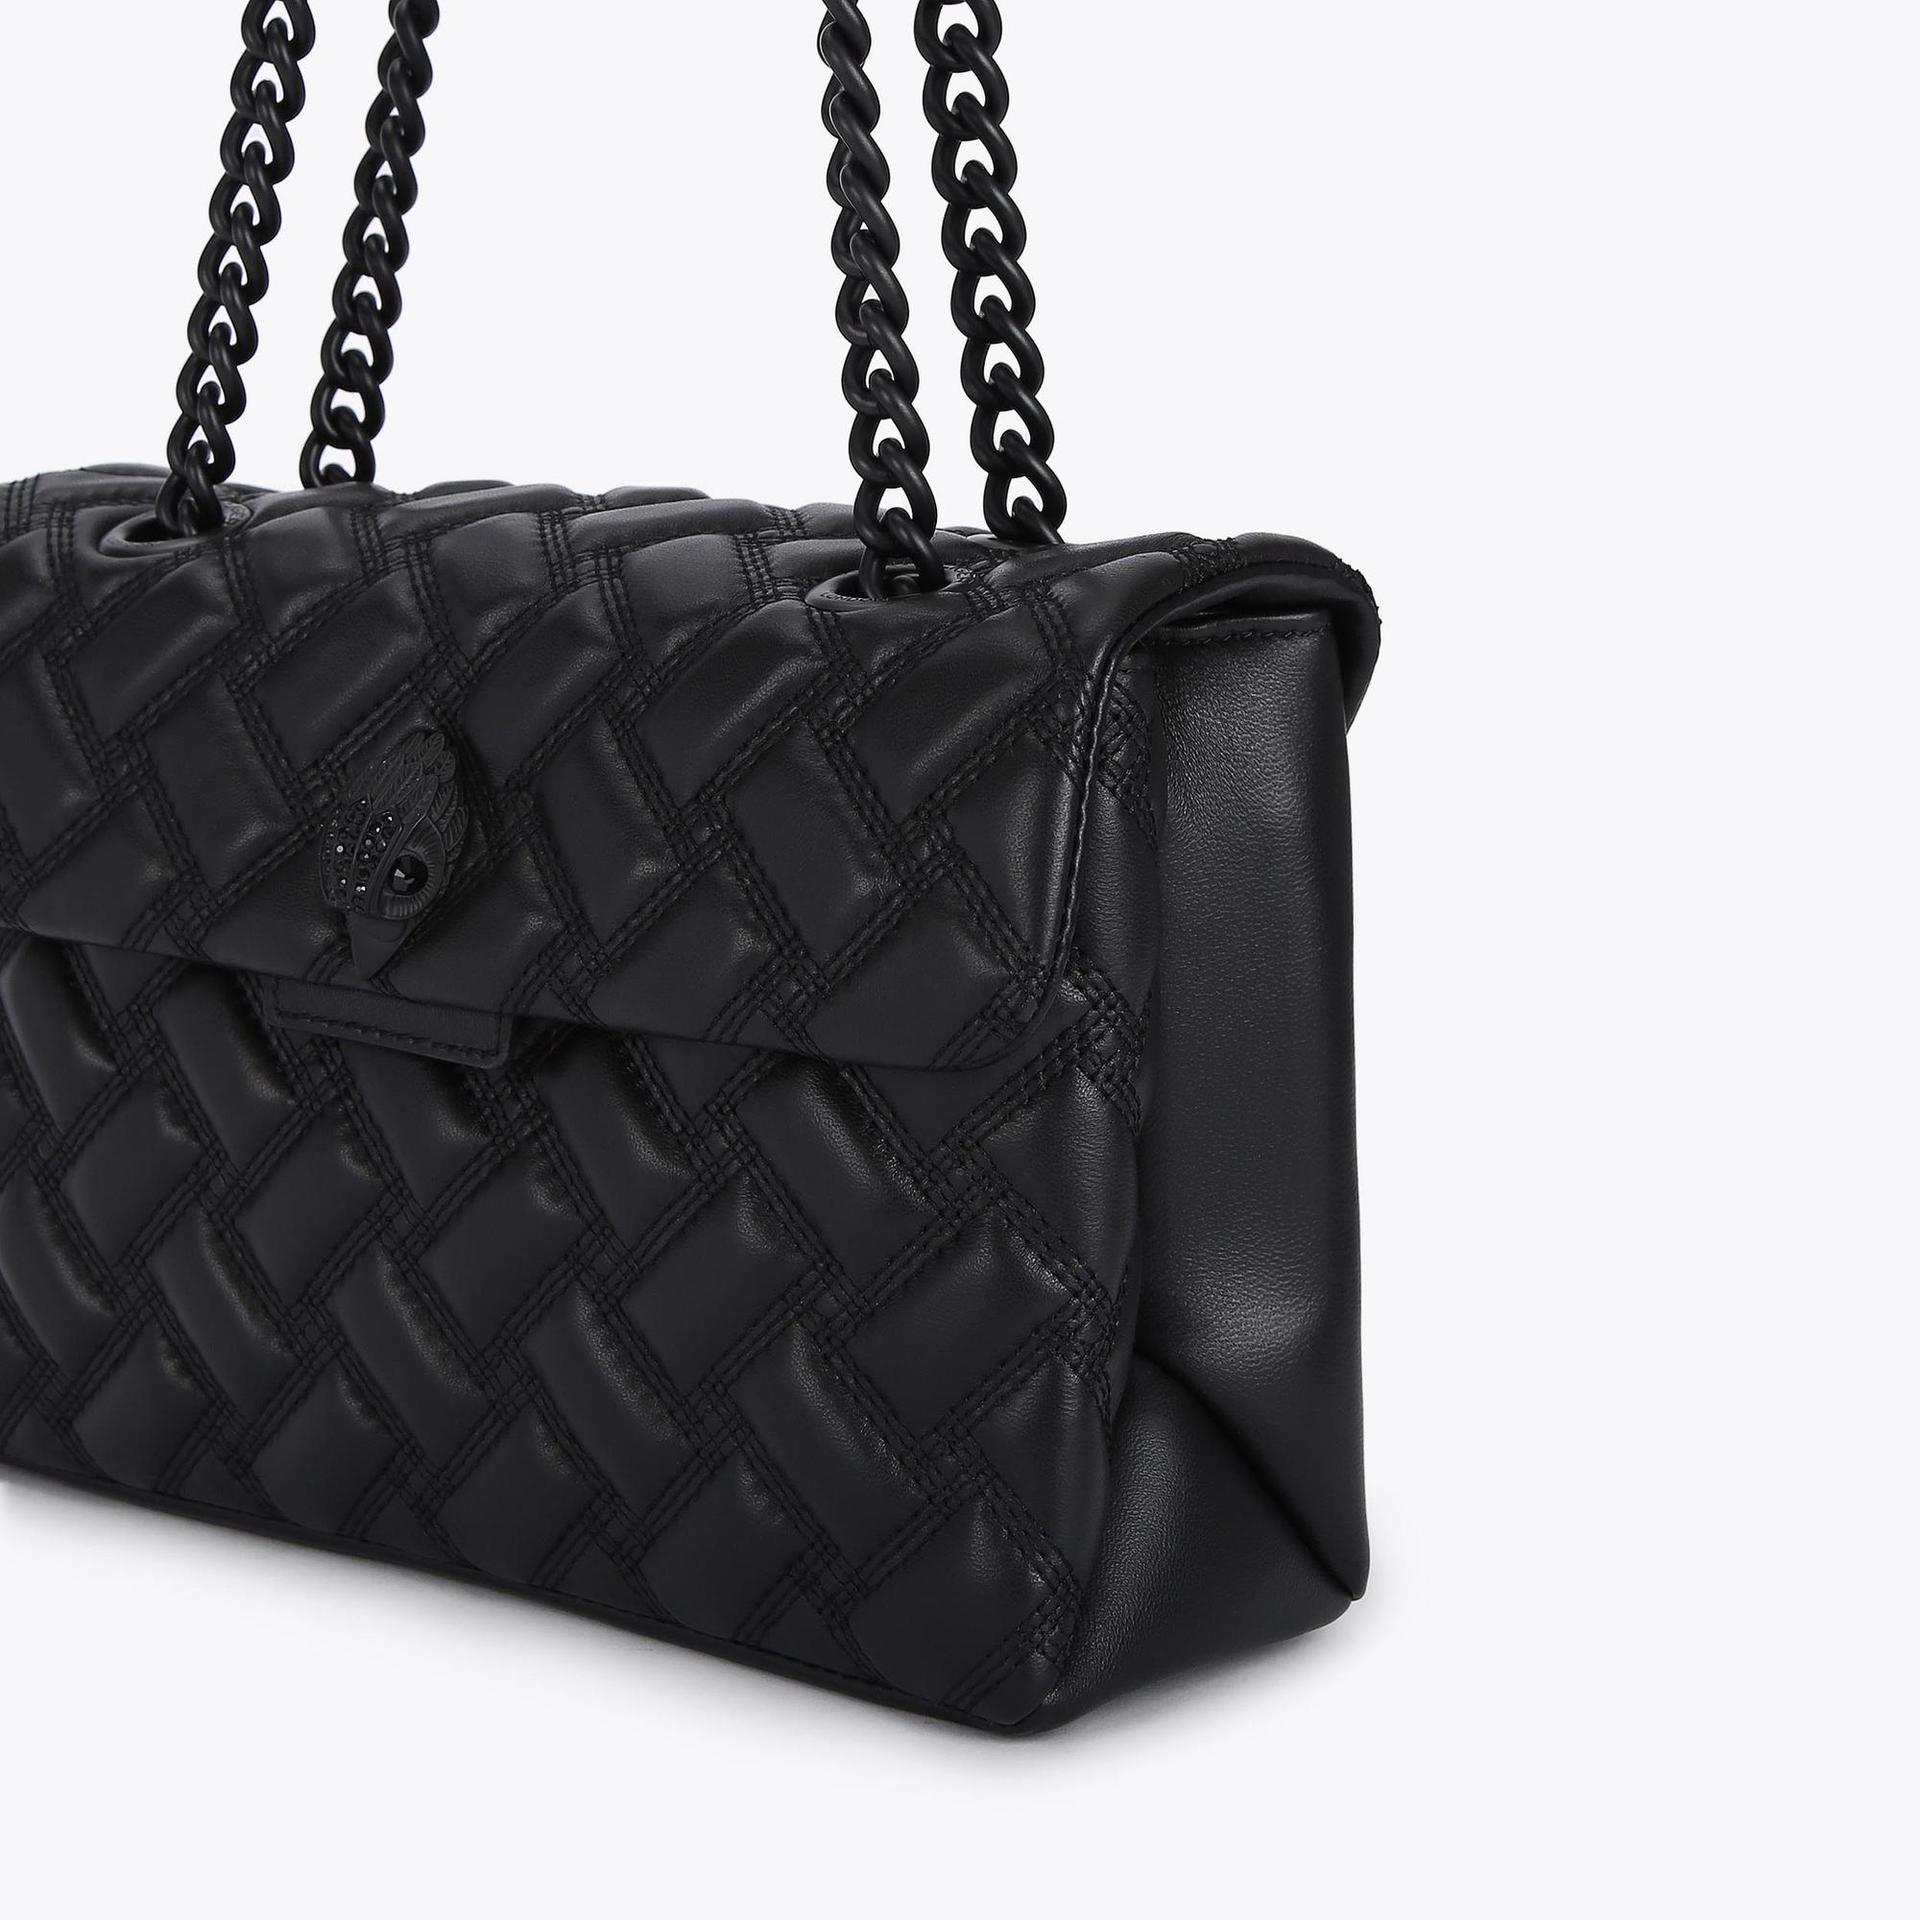 KENSINGTON BAG DRENCH Black Quilted Leather Shoulder Bag by KURT GEIGER ...